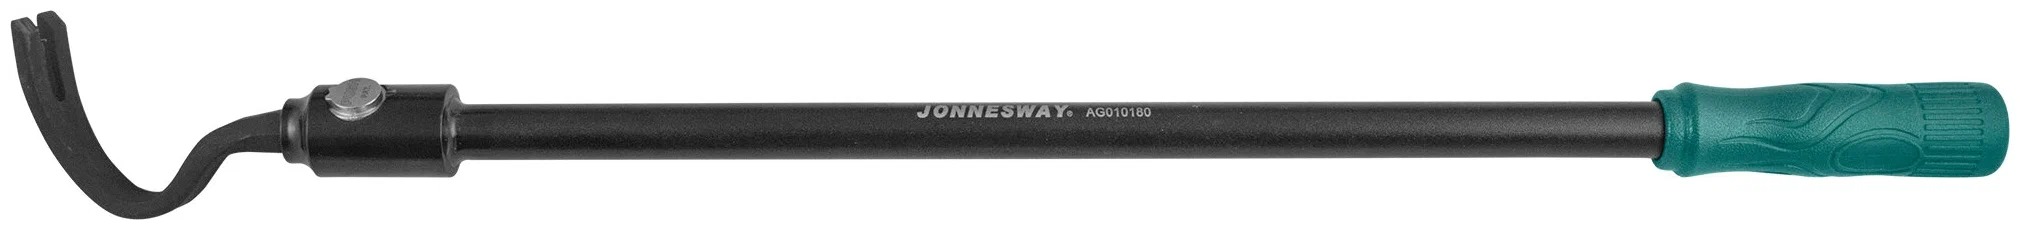 Монтажная лопатка со сменными насадками в наборе Jonnesway AG010180, 8 штук - фото